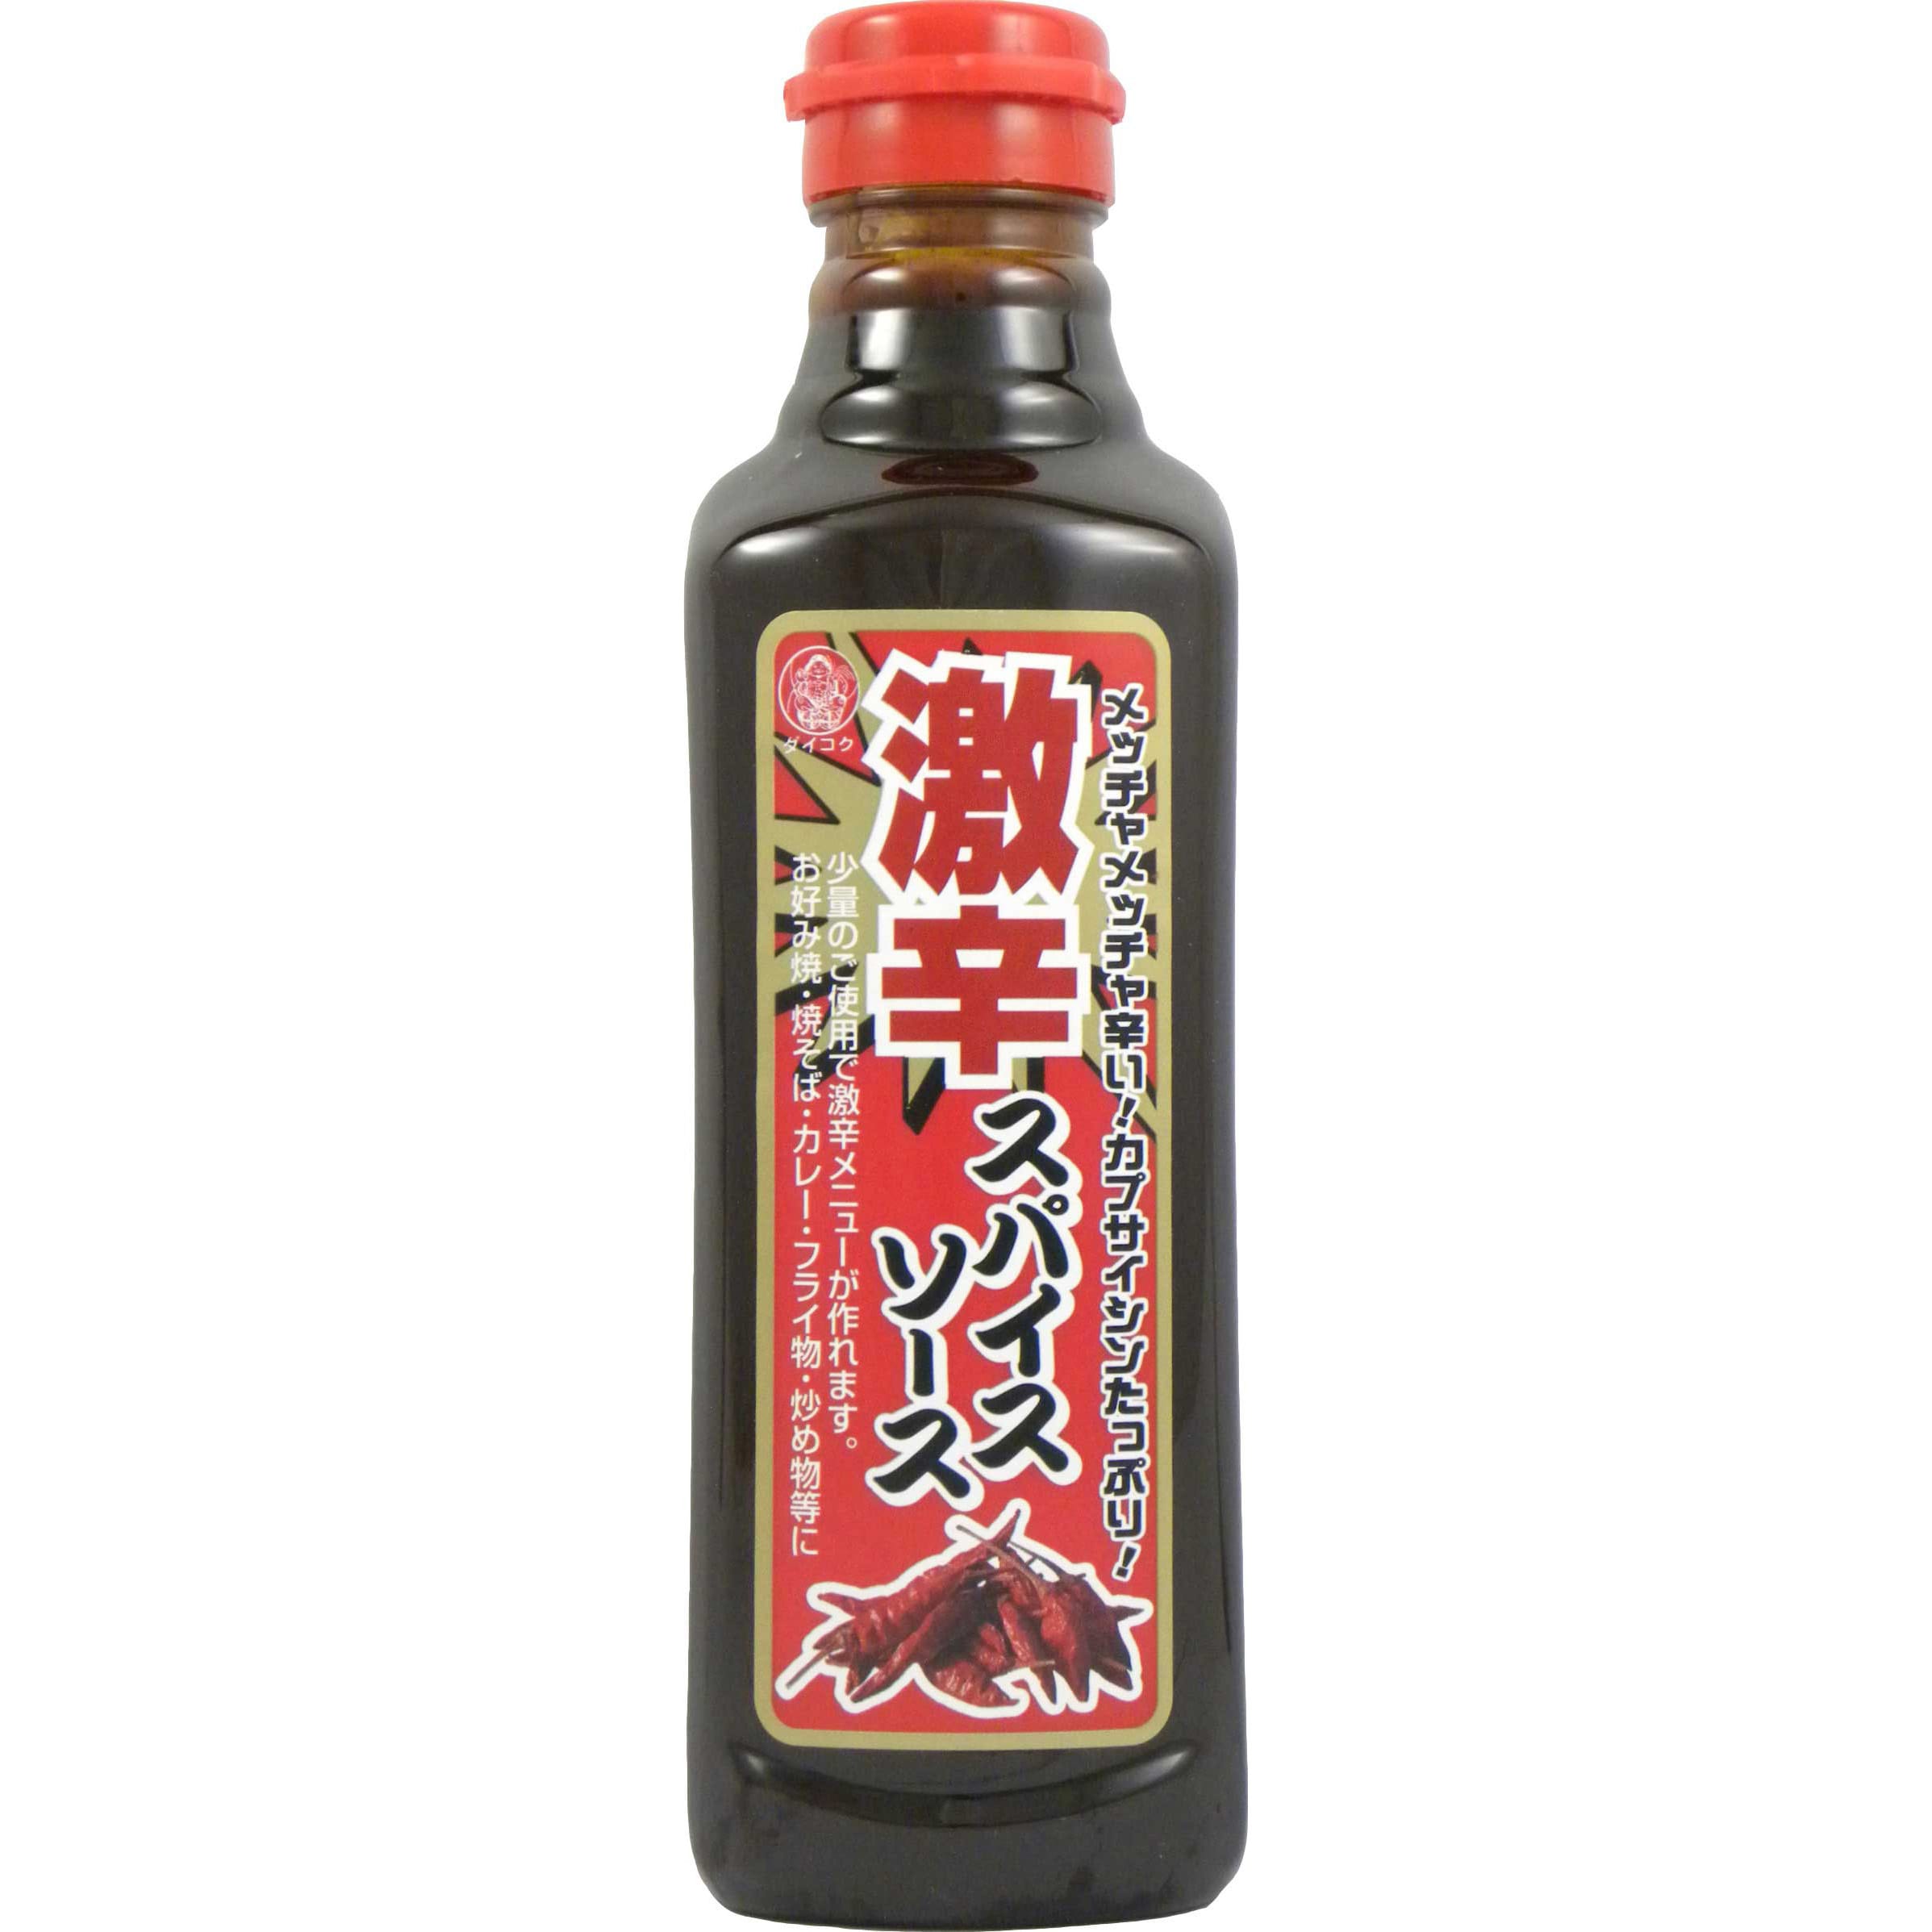 Daikokuya Japanese Super Hot Sauce 500ml, Japanese Taste